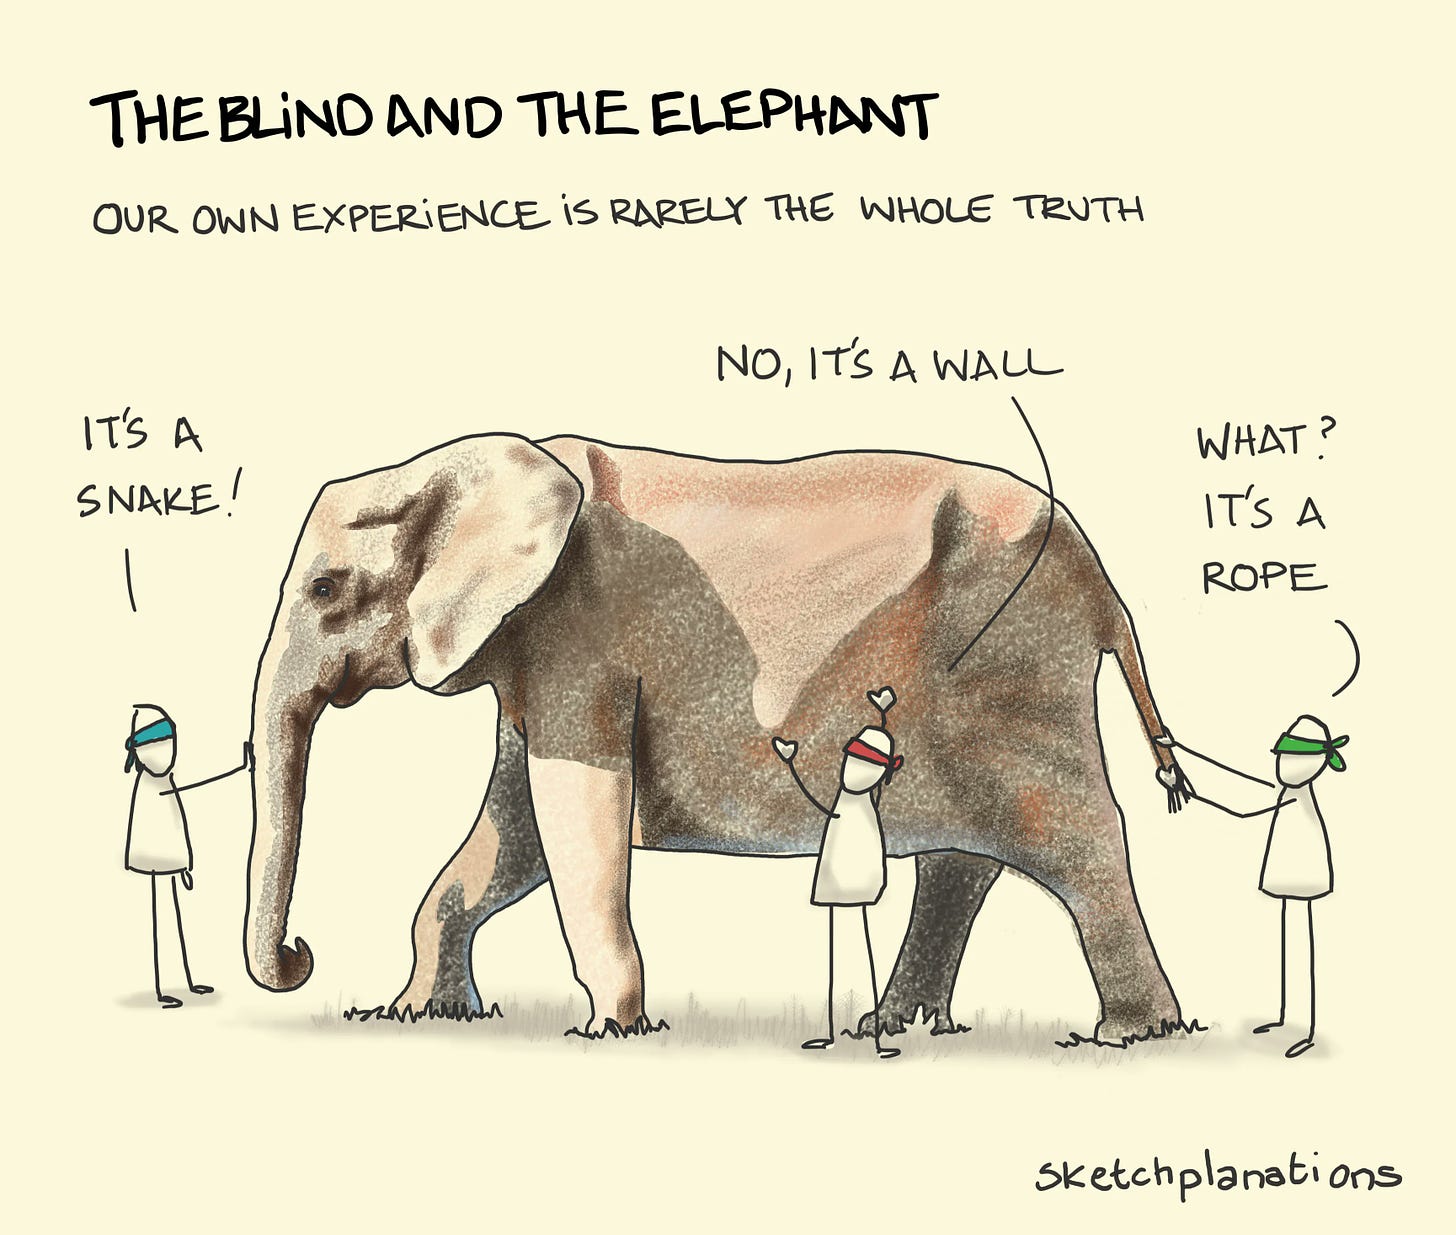 conto dos seis cegos e o elefante